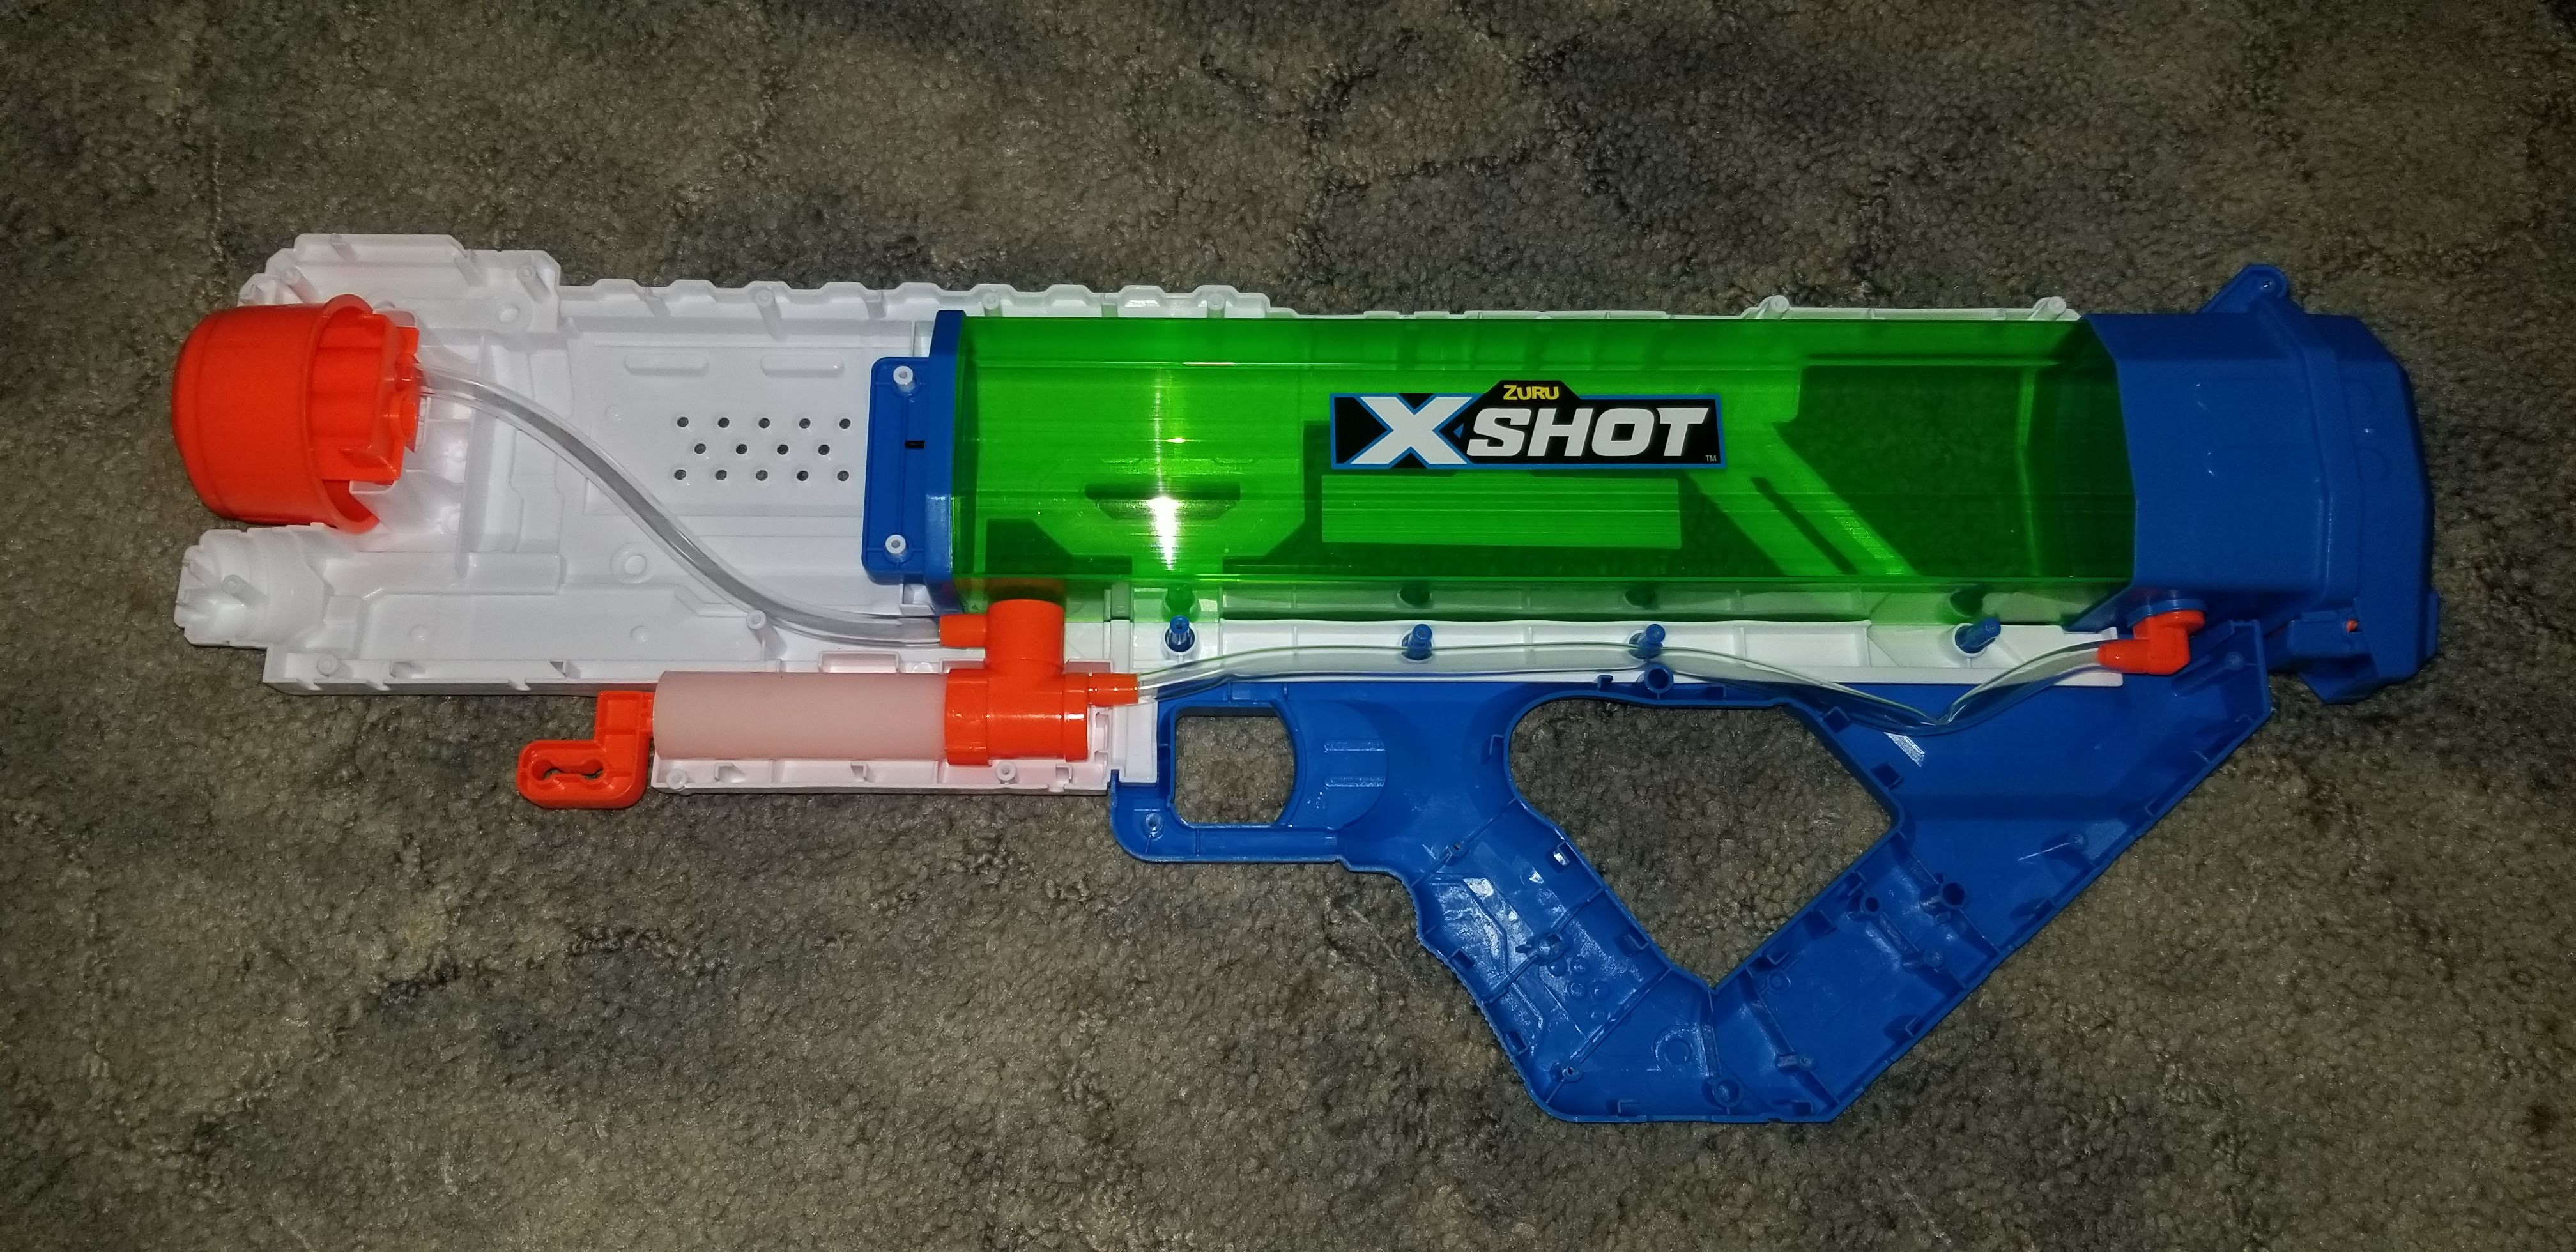 Zuru X-Shot Epic Fast Fill Water Blaster